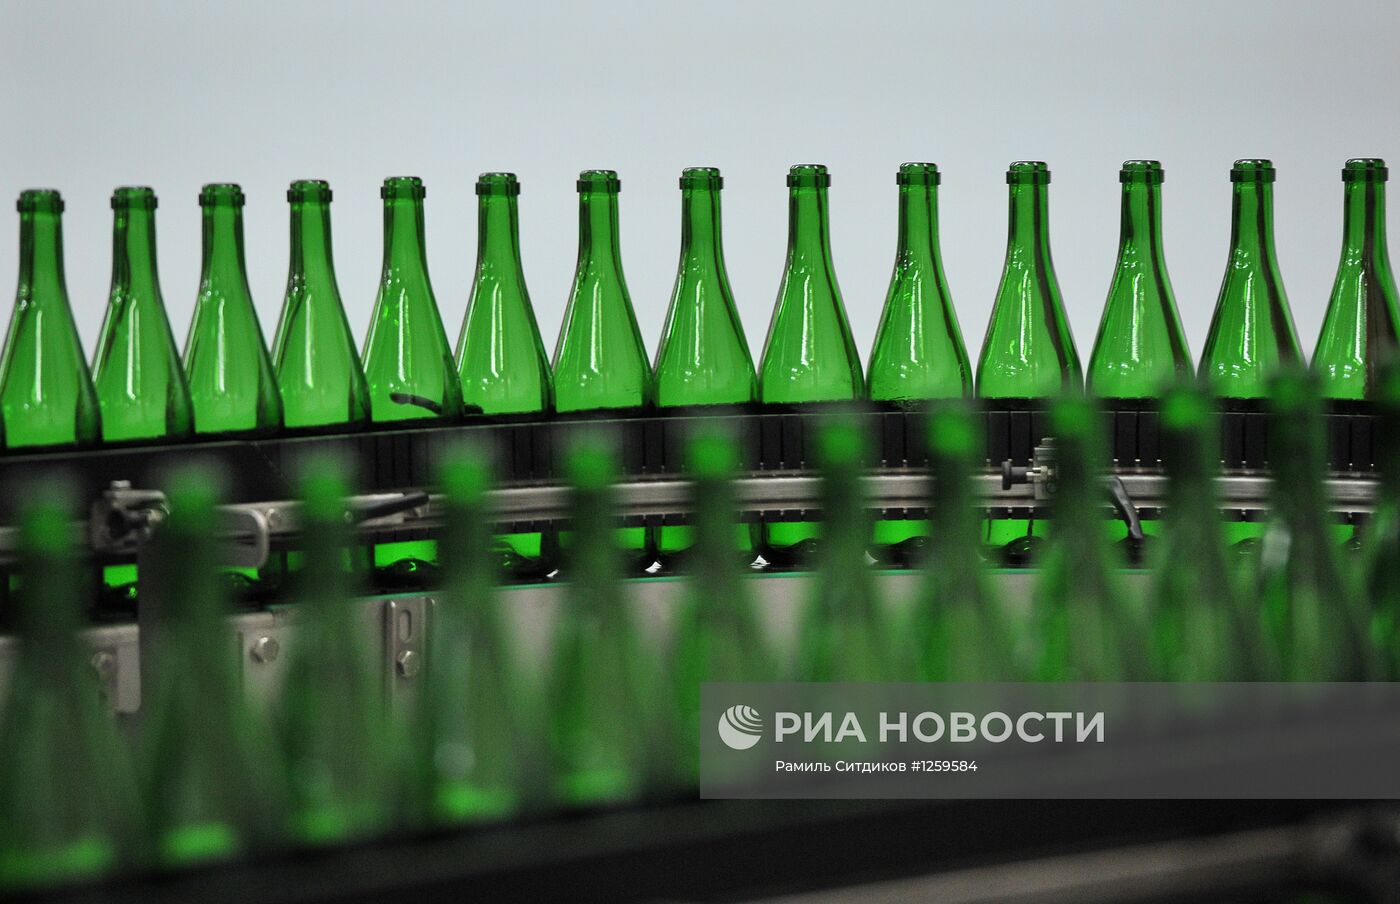 Работа Московского межреспубликанского винодельческого завода